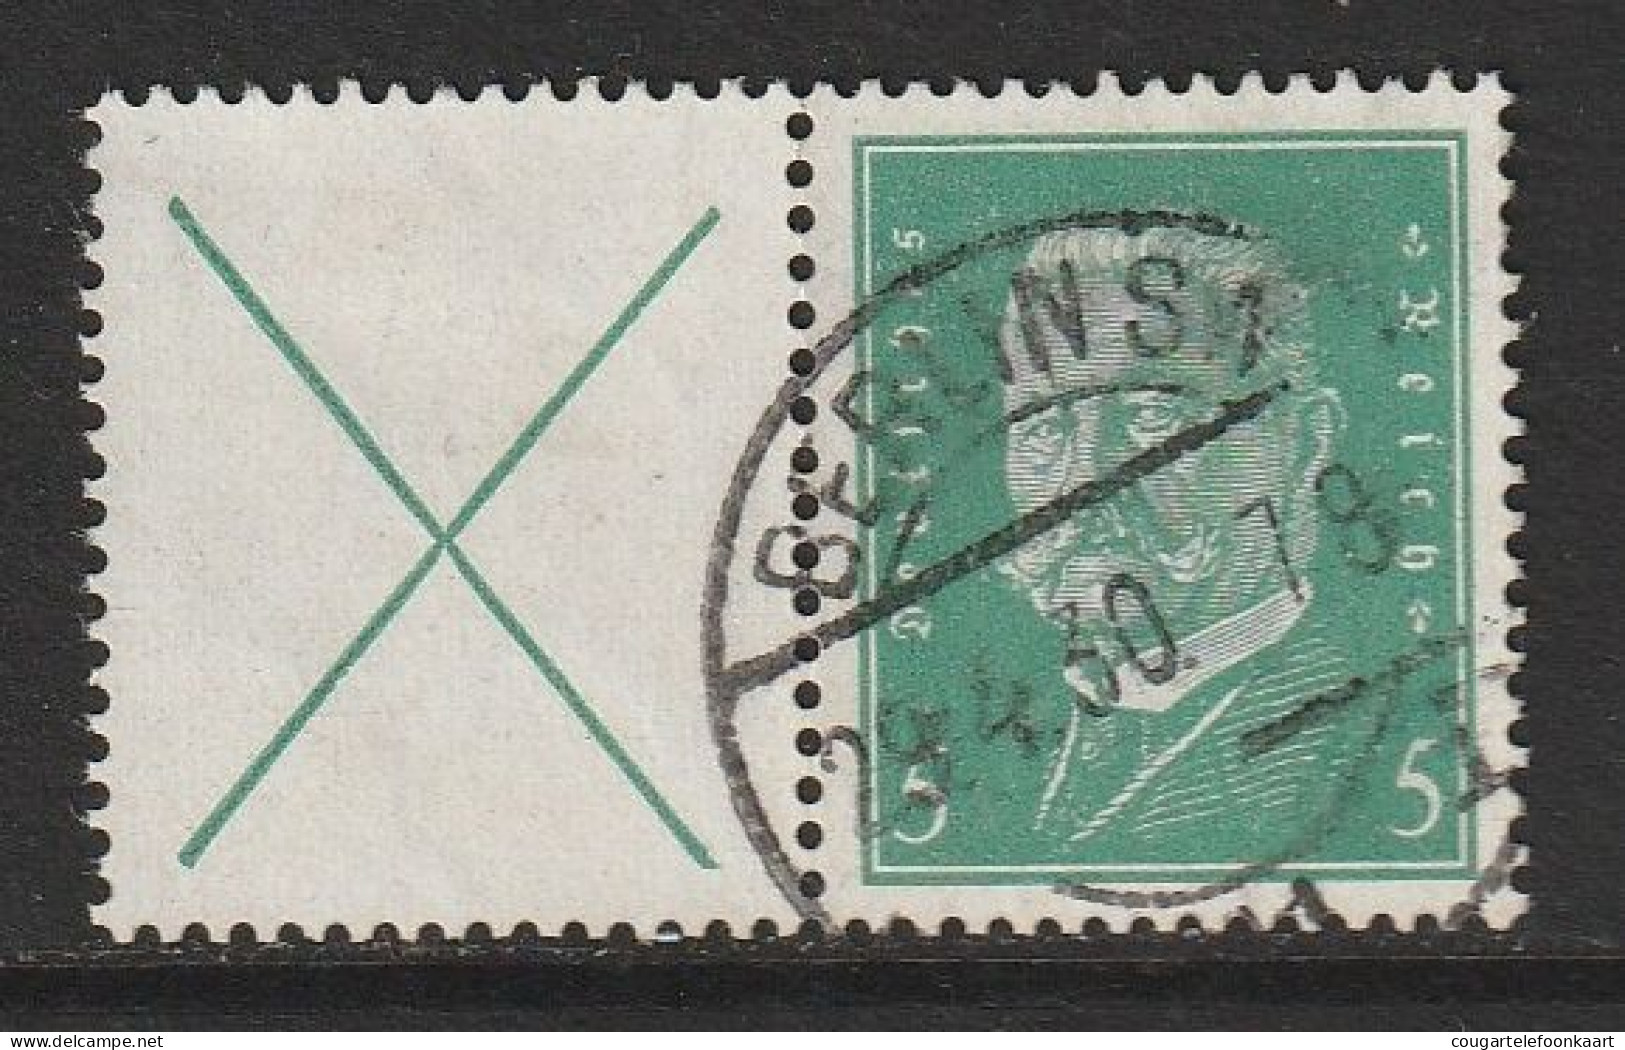 Reichspräsidenten 1928, Combinatie W 27.1, Gestempelt, 15€ Kat. - Carnets & Se-tenant